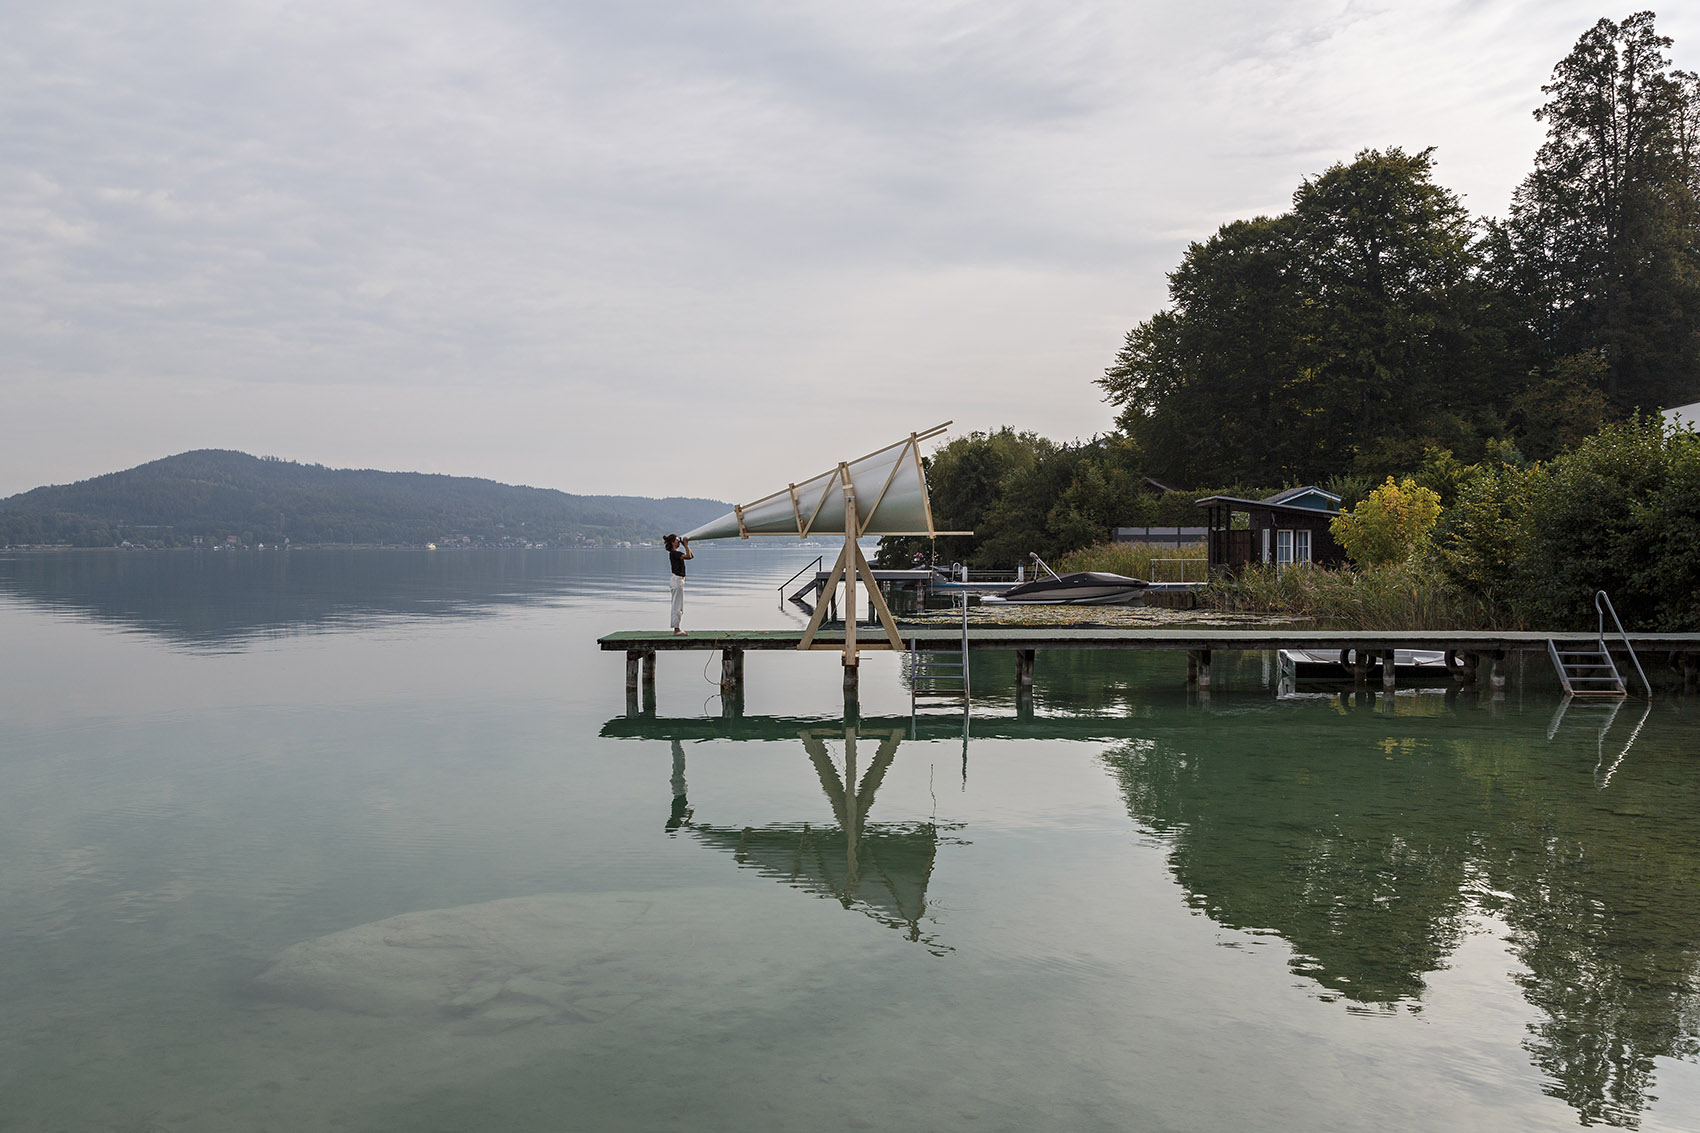 奥地利湖畔观景台装置艺术